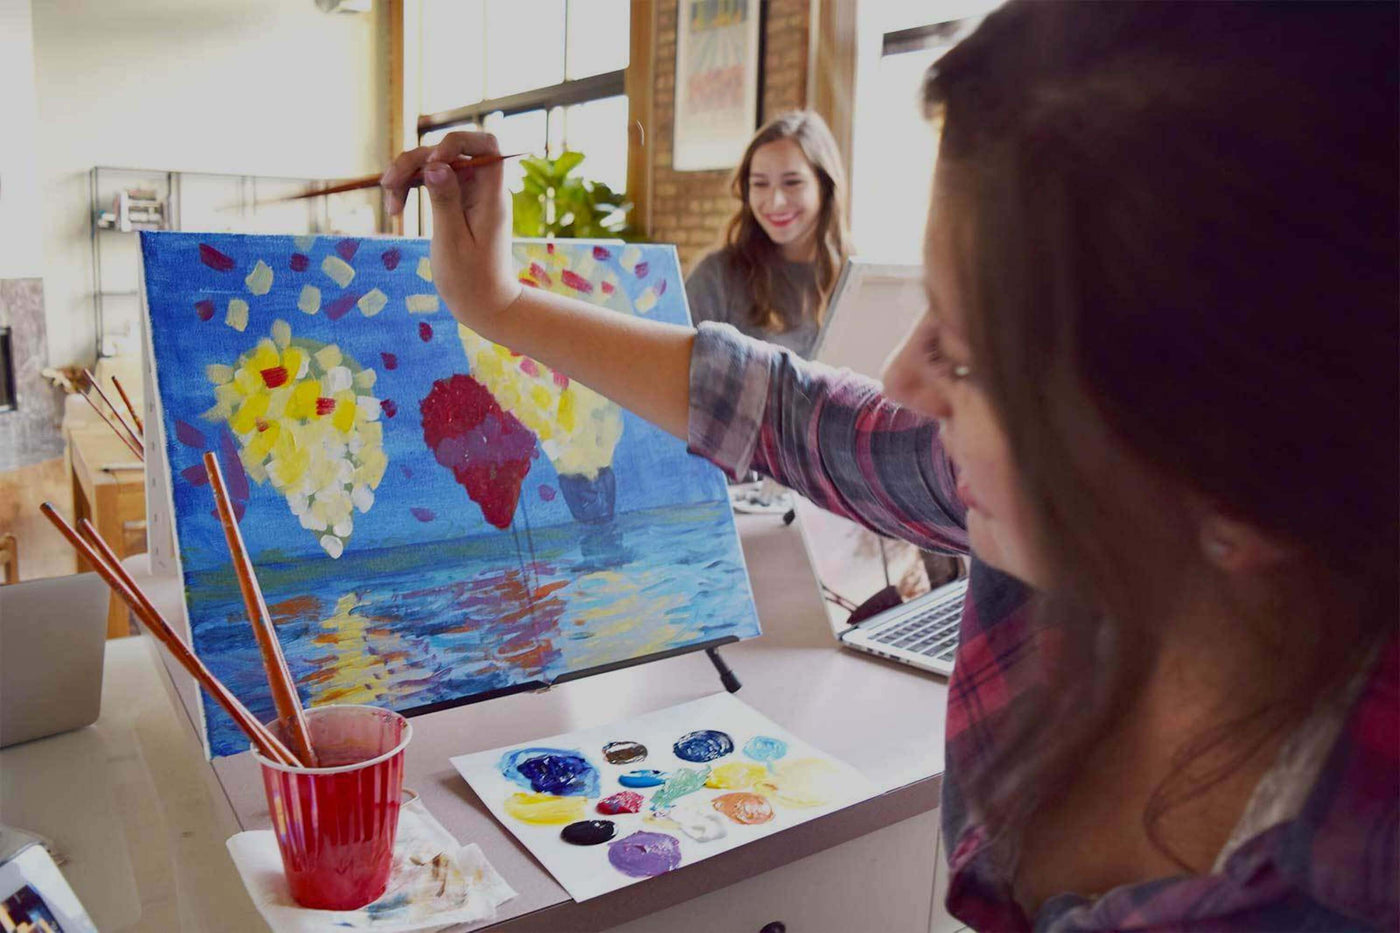 Personalized Kids DIY Canvas - Paint It! - 5 1/2 x 11